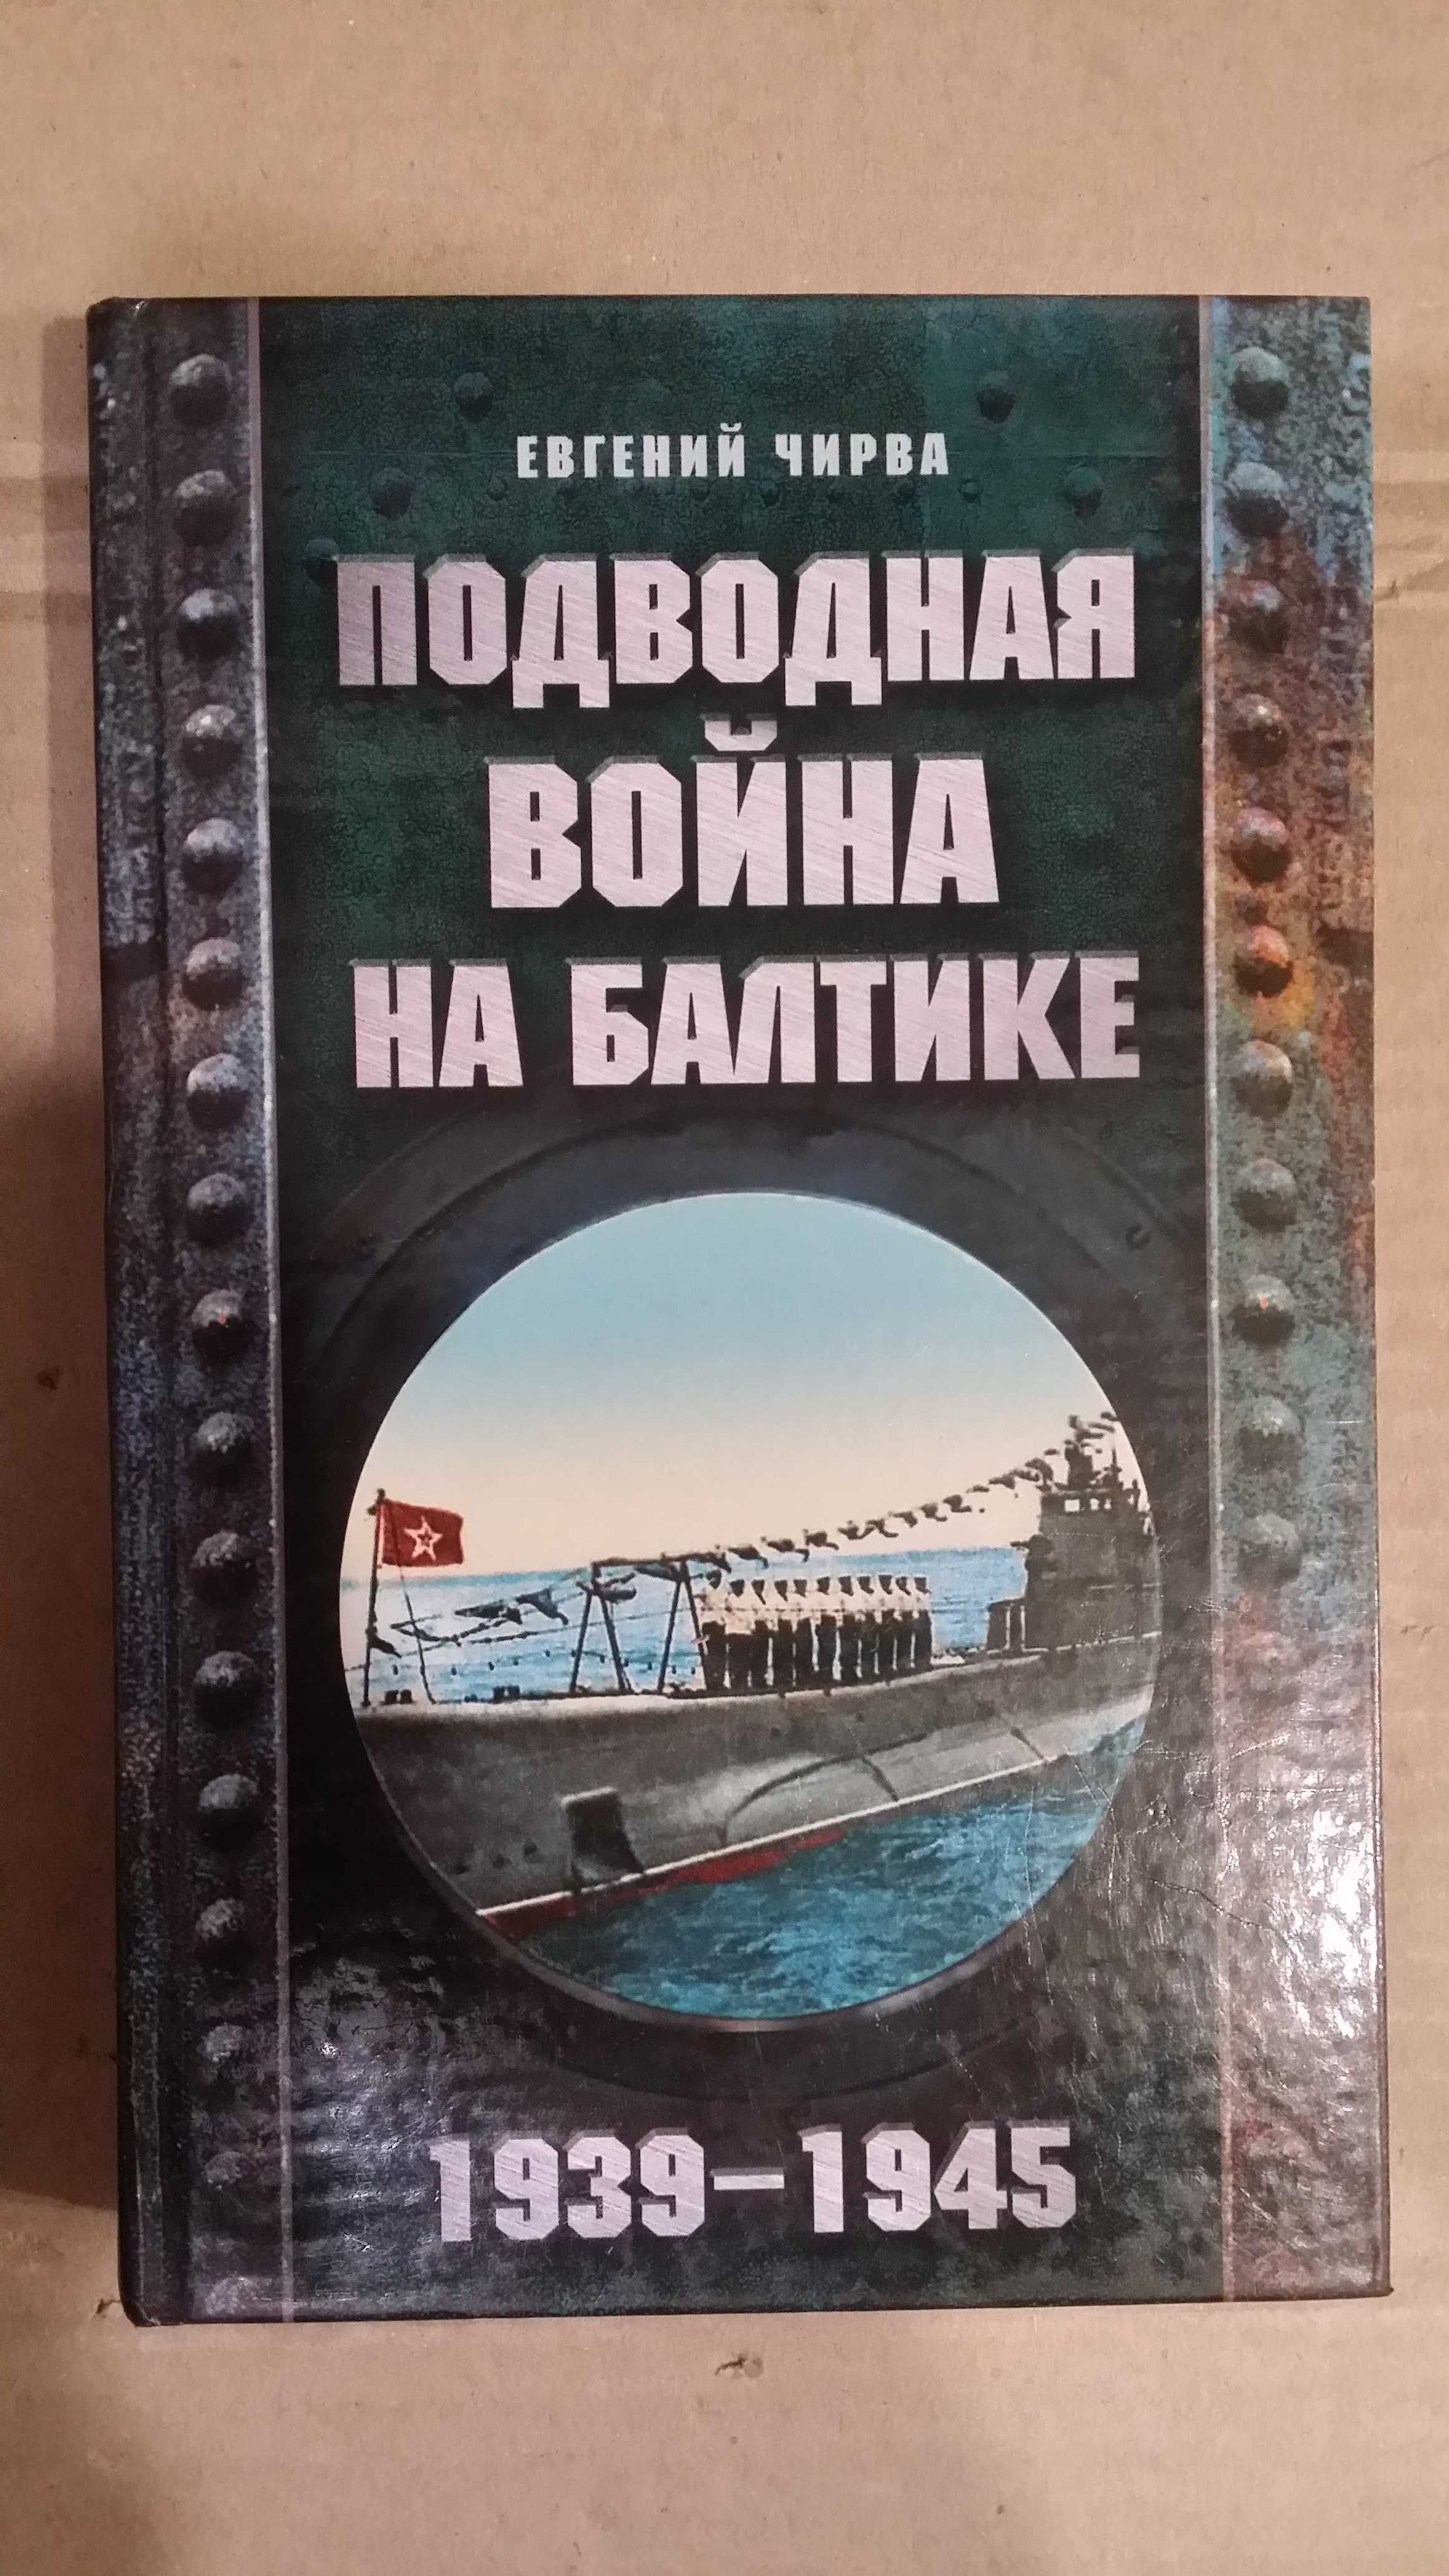 Чирва Е.   "Подводная война на Балтике 1939-1945".